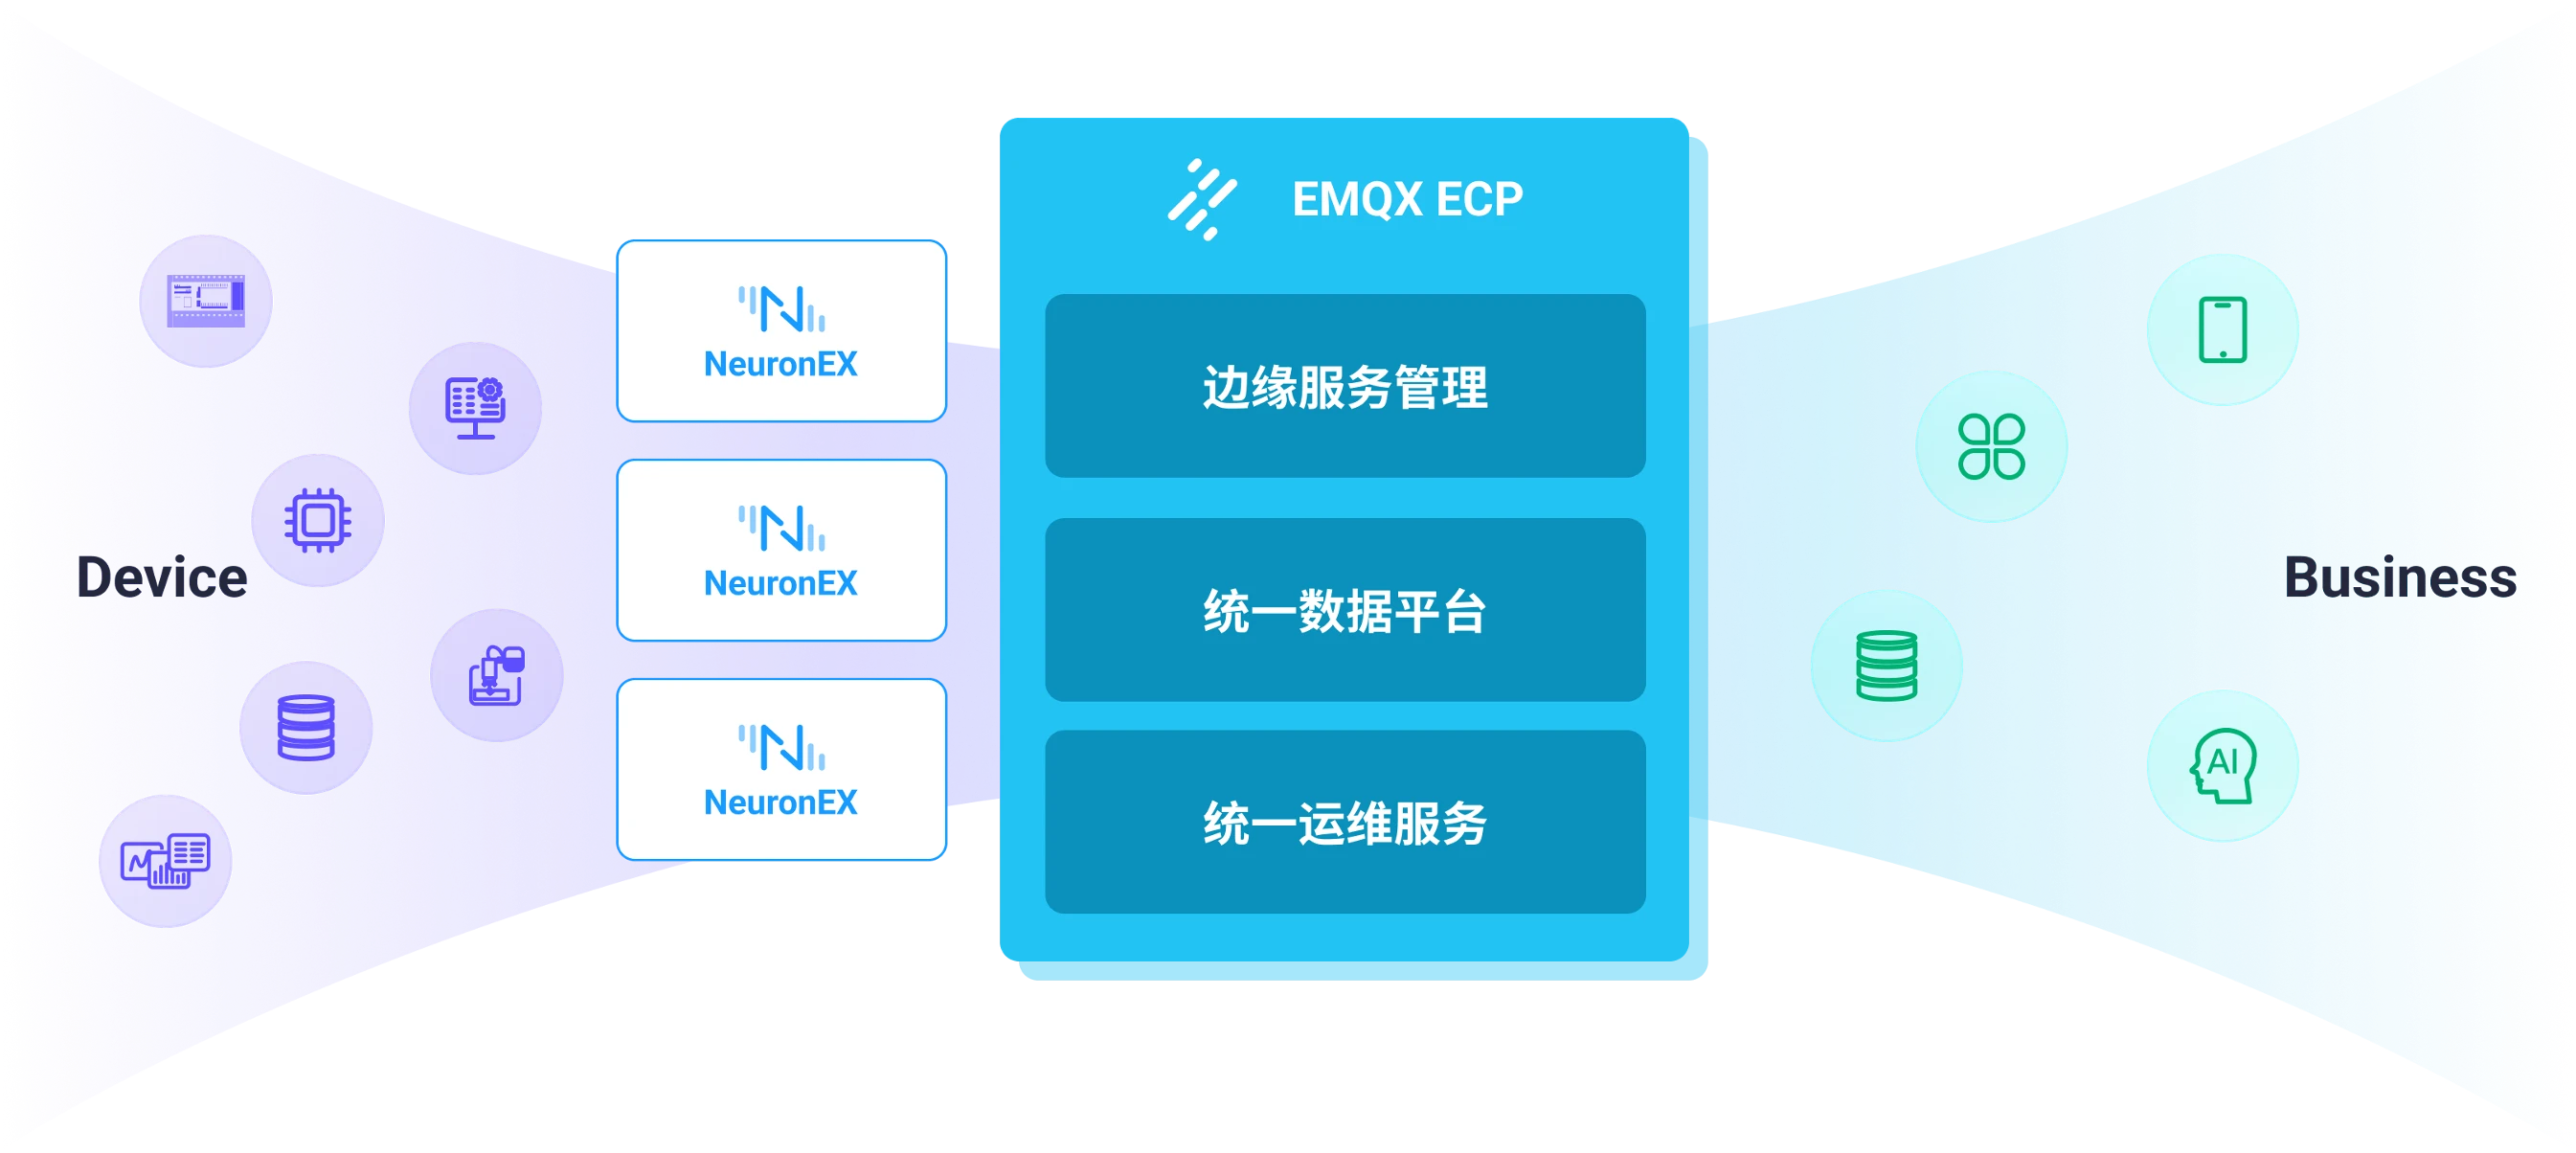 工业互联数据平台 EMQX ECP